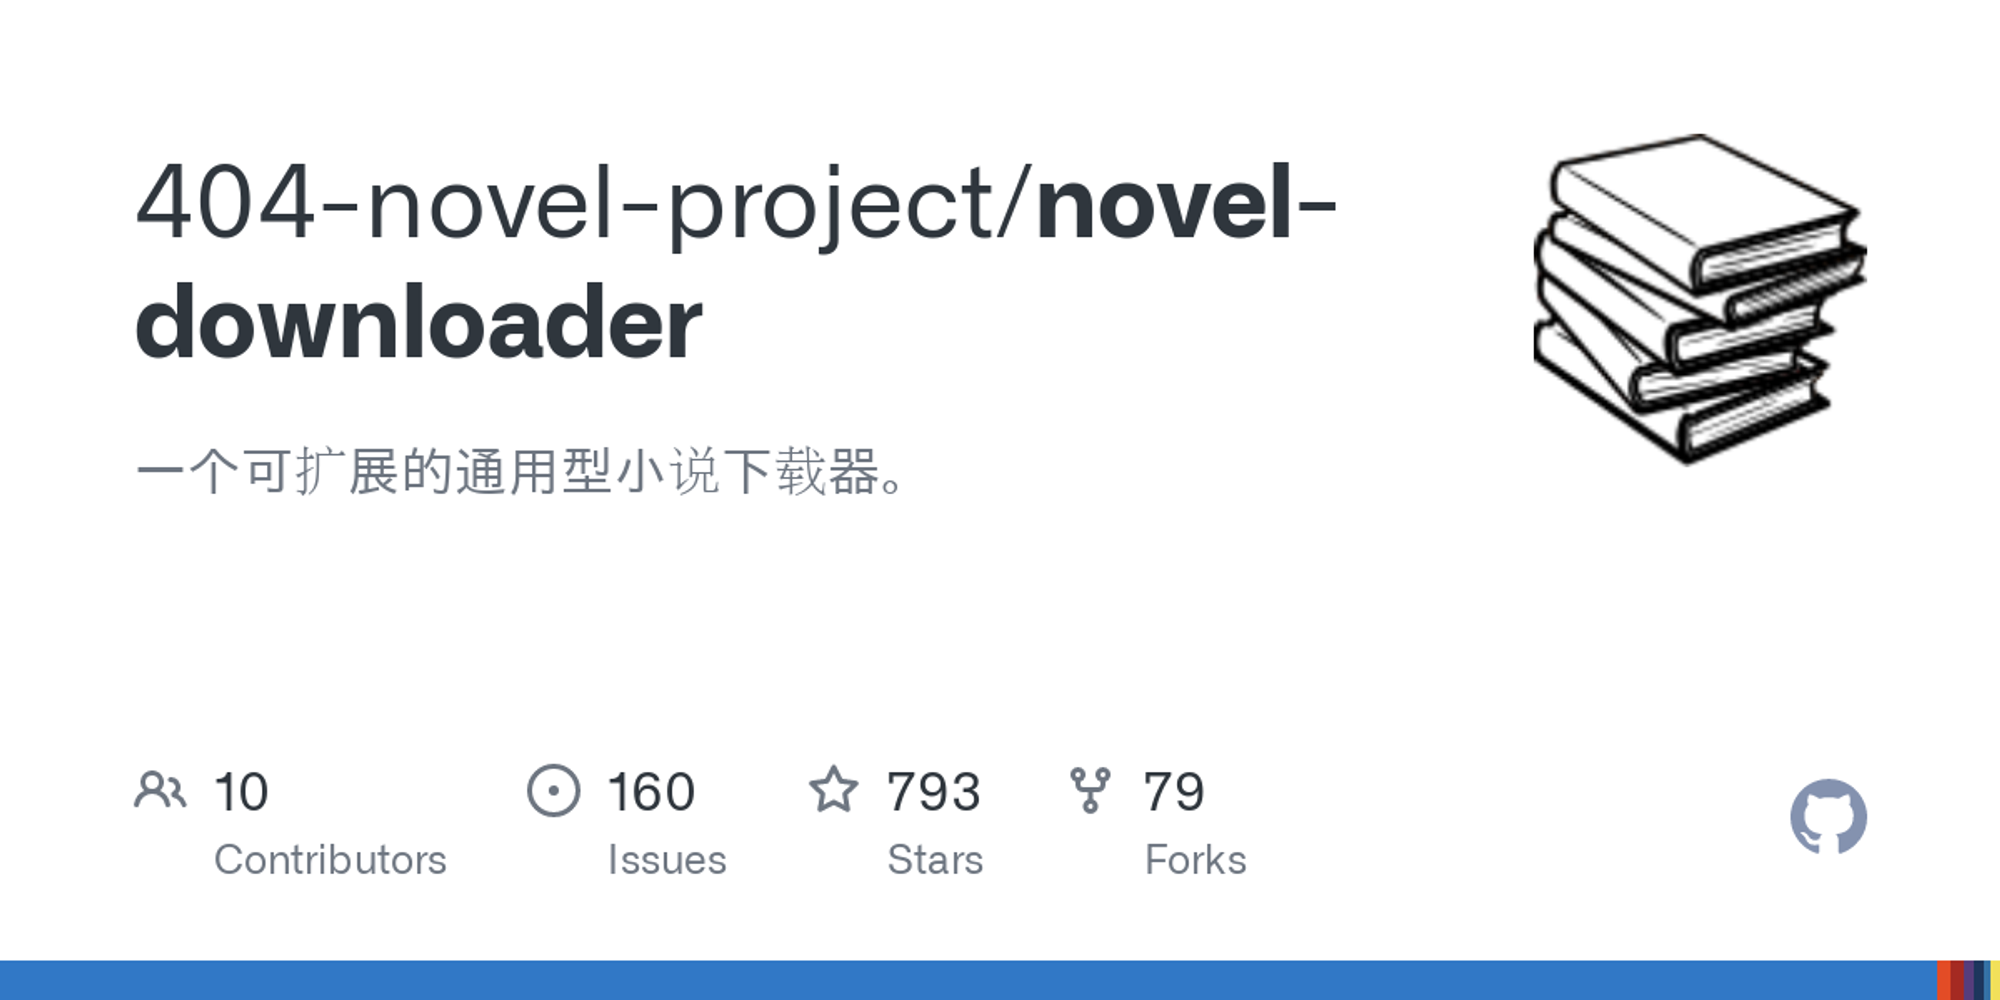 novel-downloader/test/sites.ts at master · 404-novel-project/novel-downloader